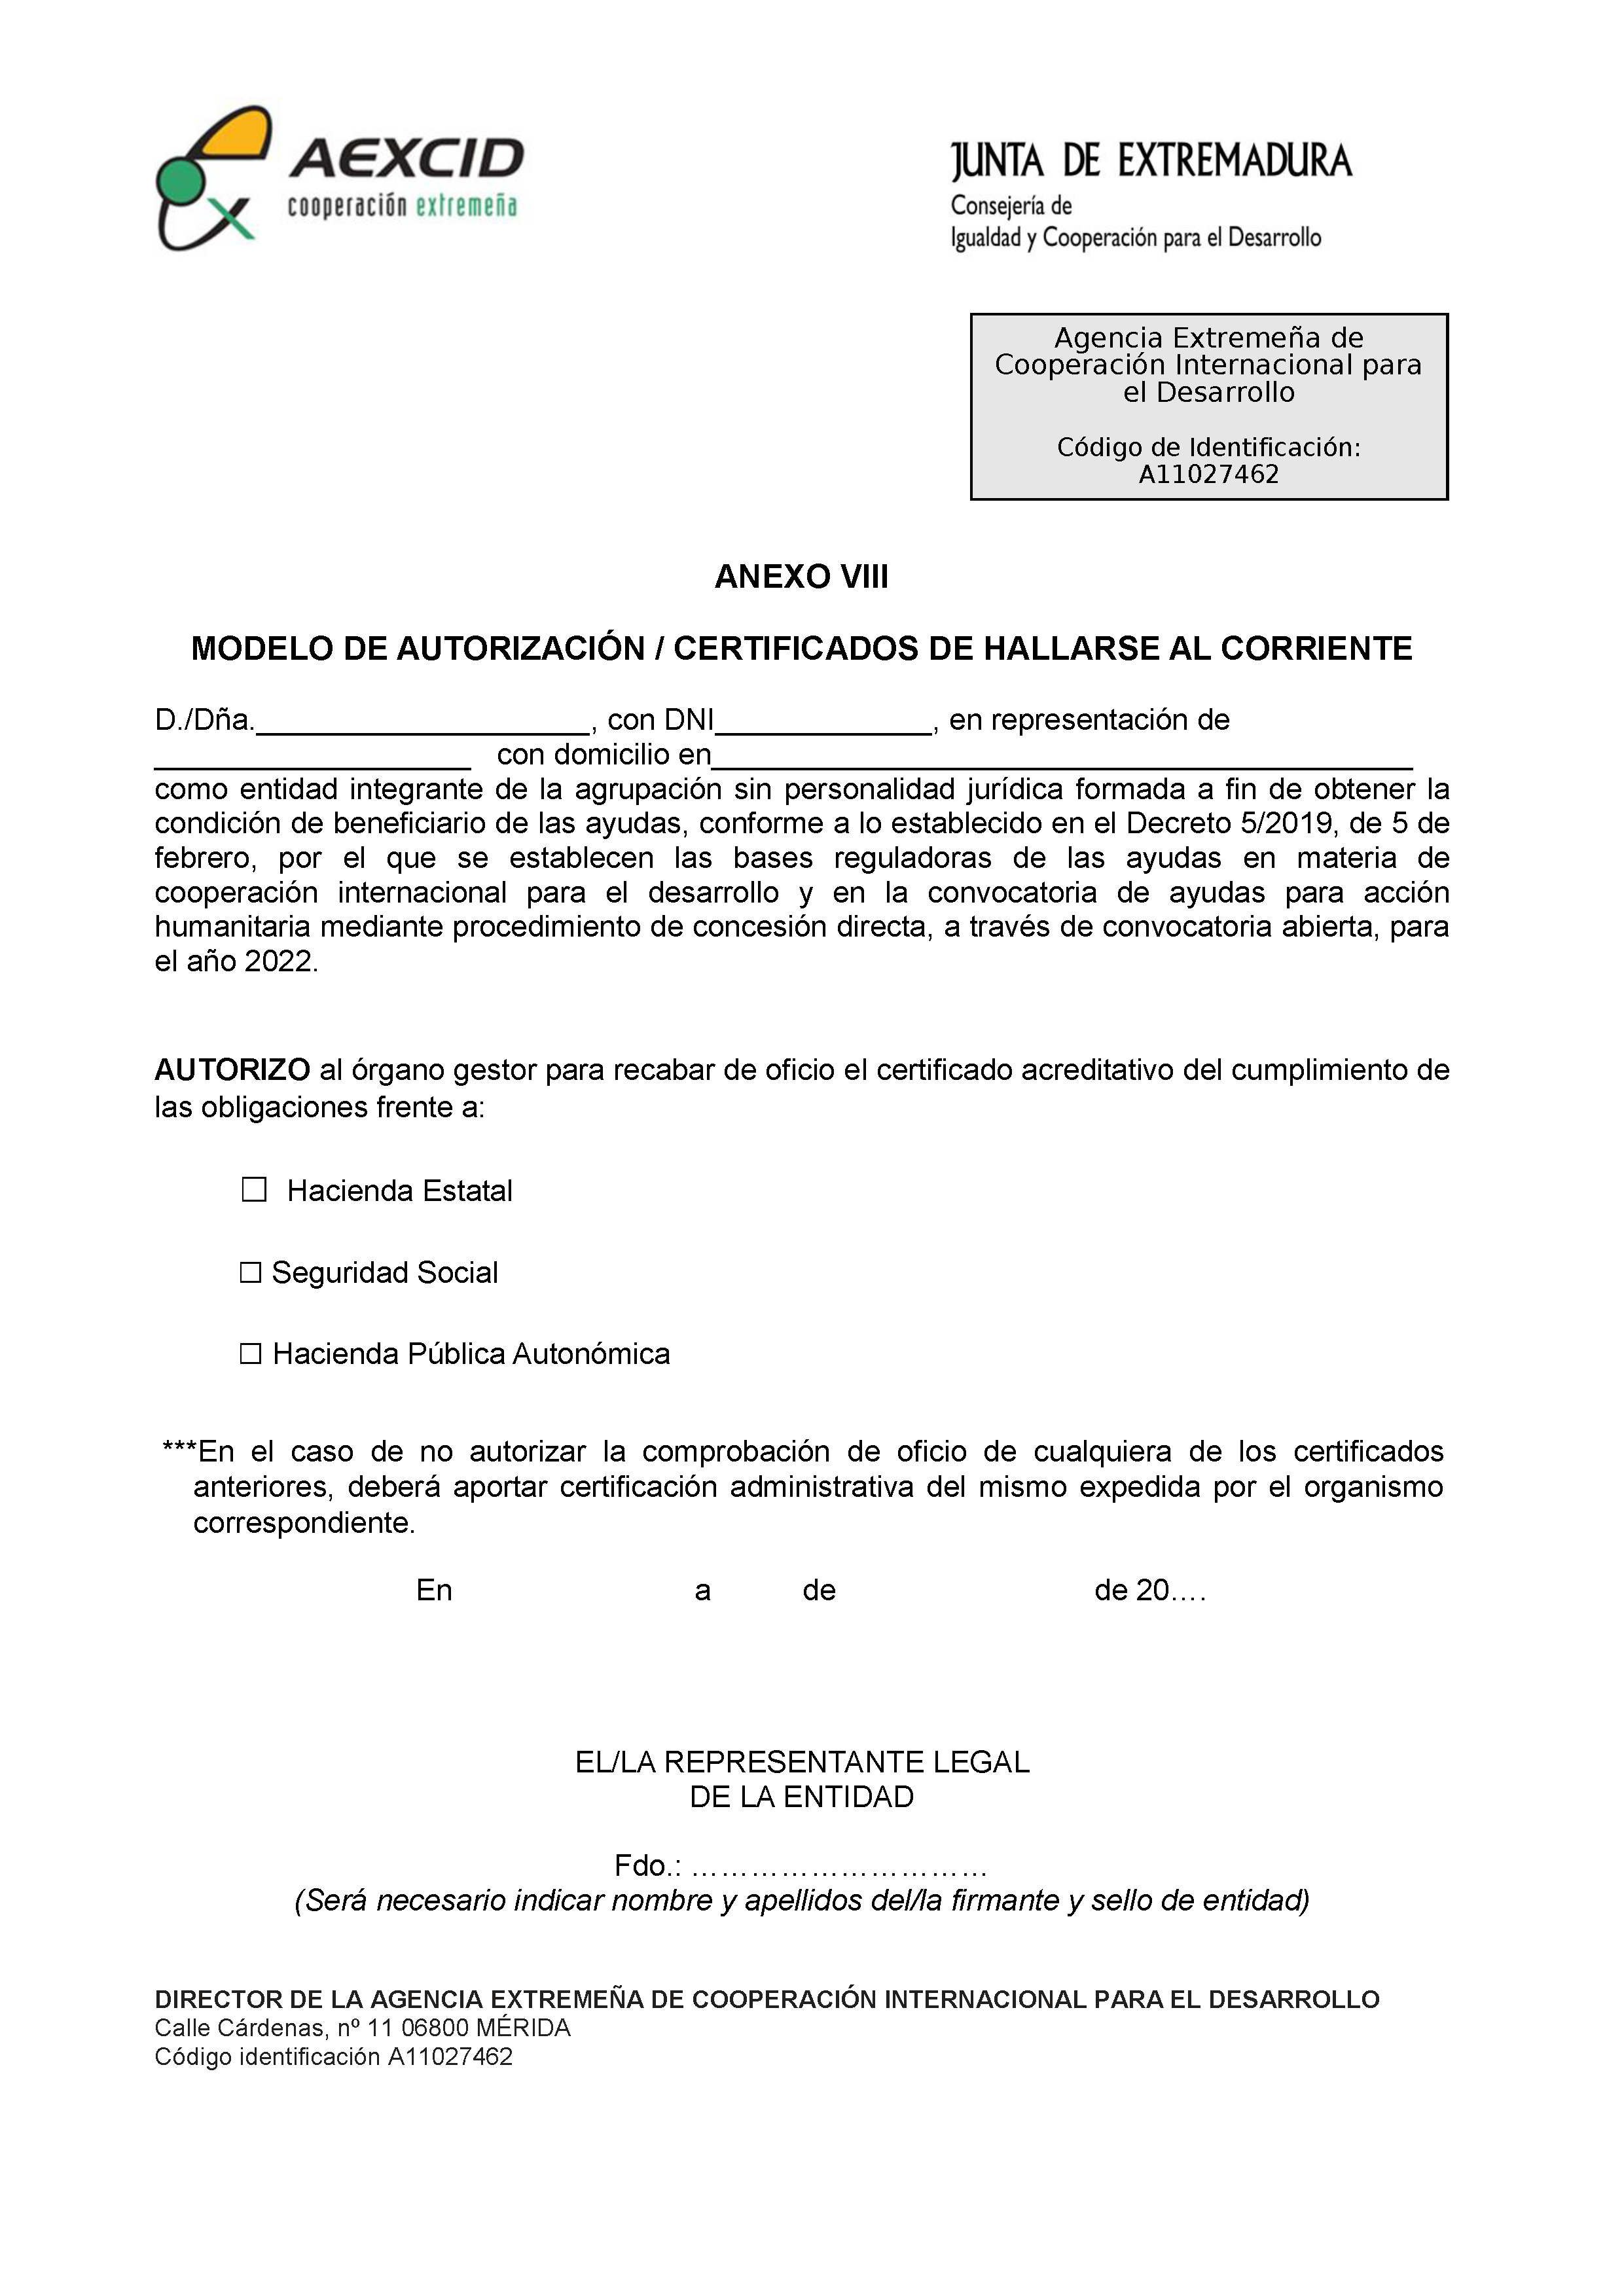 ANEXO VIII MODELO DE AUTORIZACION / CERTIFICADOS DE HALLARSE AL CORRIENTE Pag 1